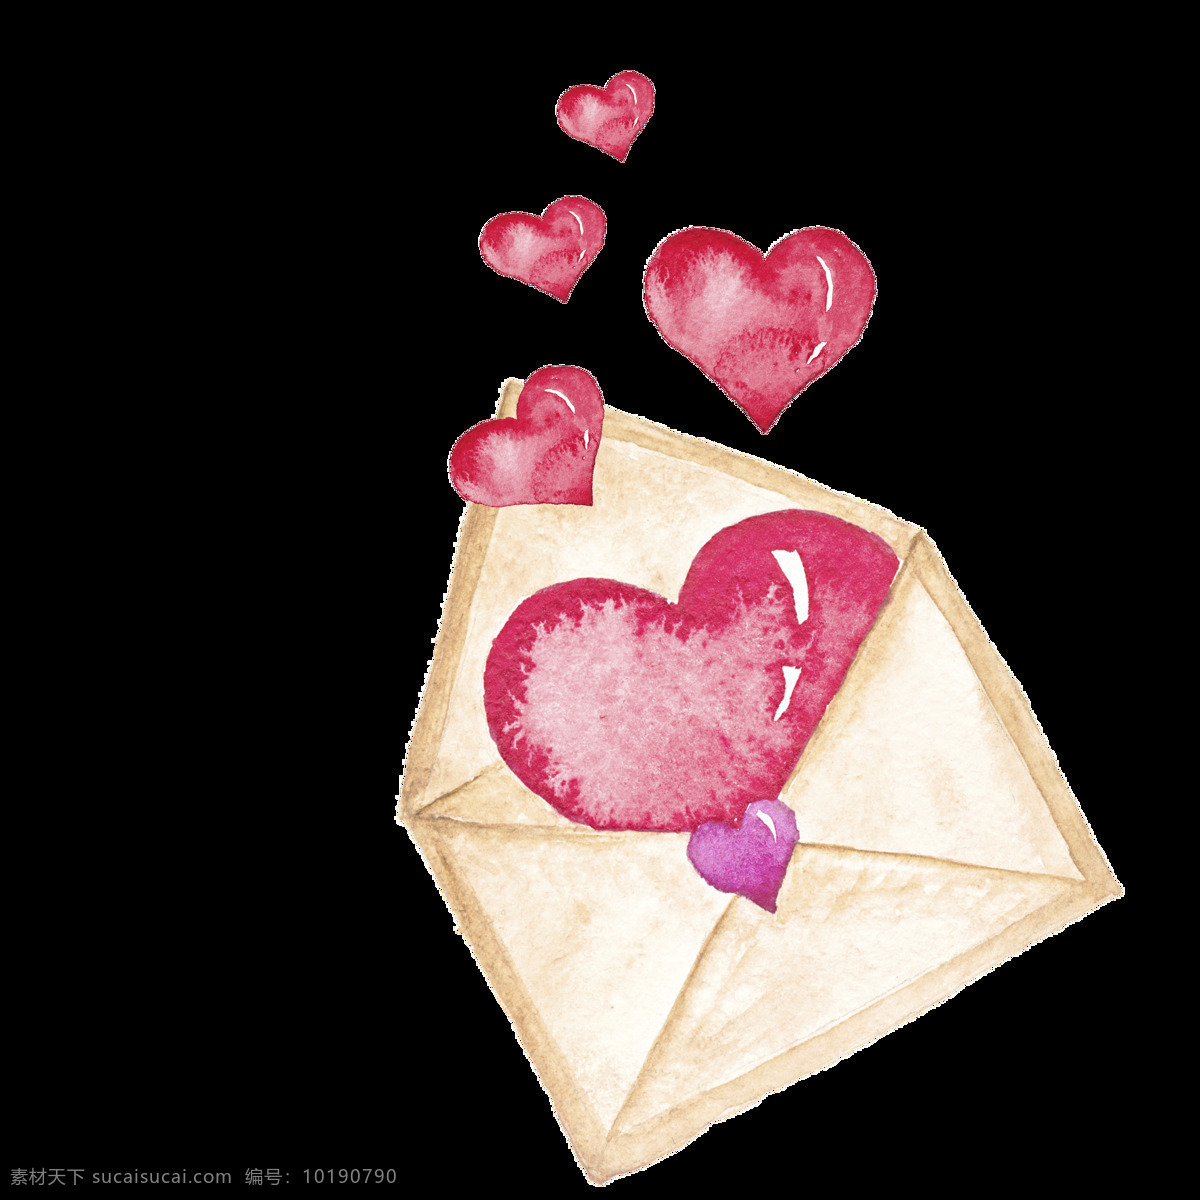 情人节 卡片 装饰 透明 粉色 信封 手绘 矢量素材 设计素材